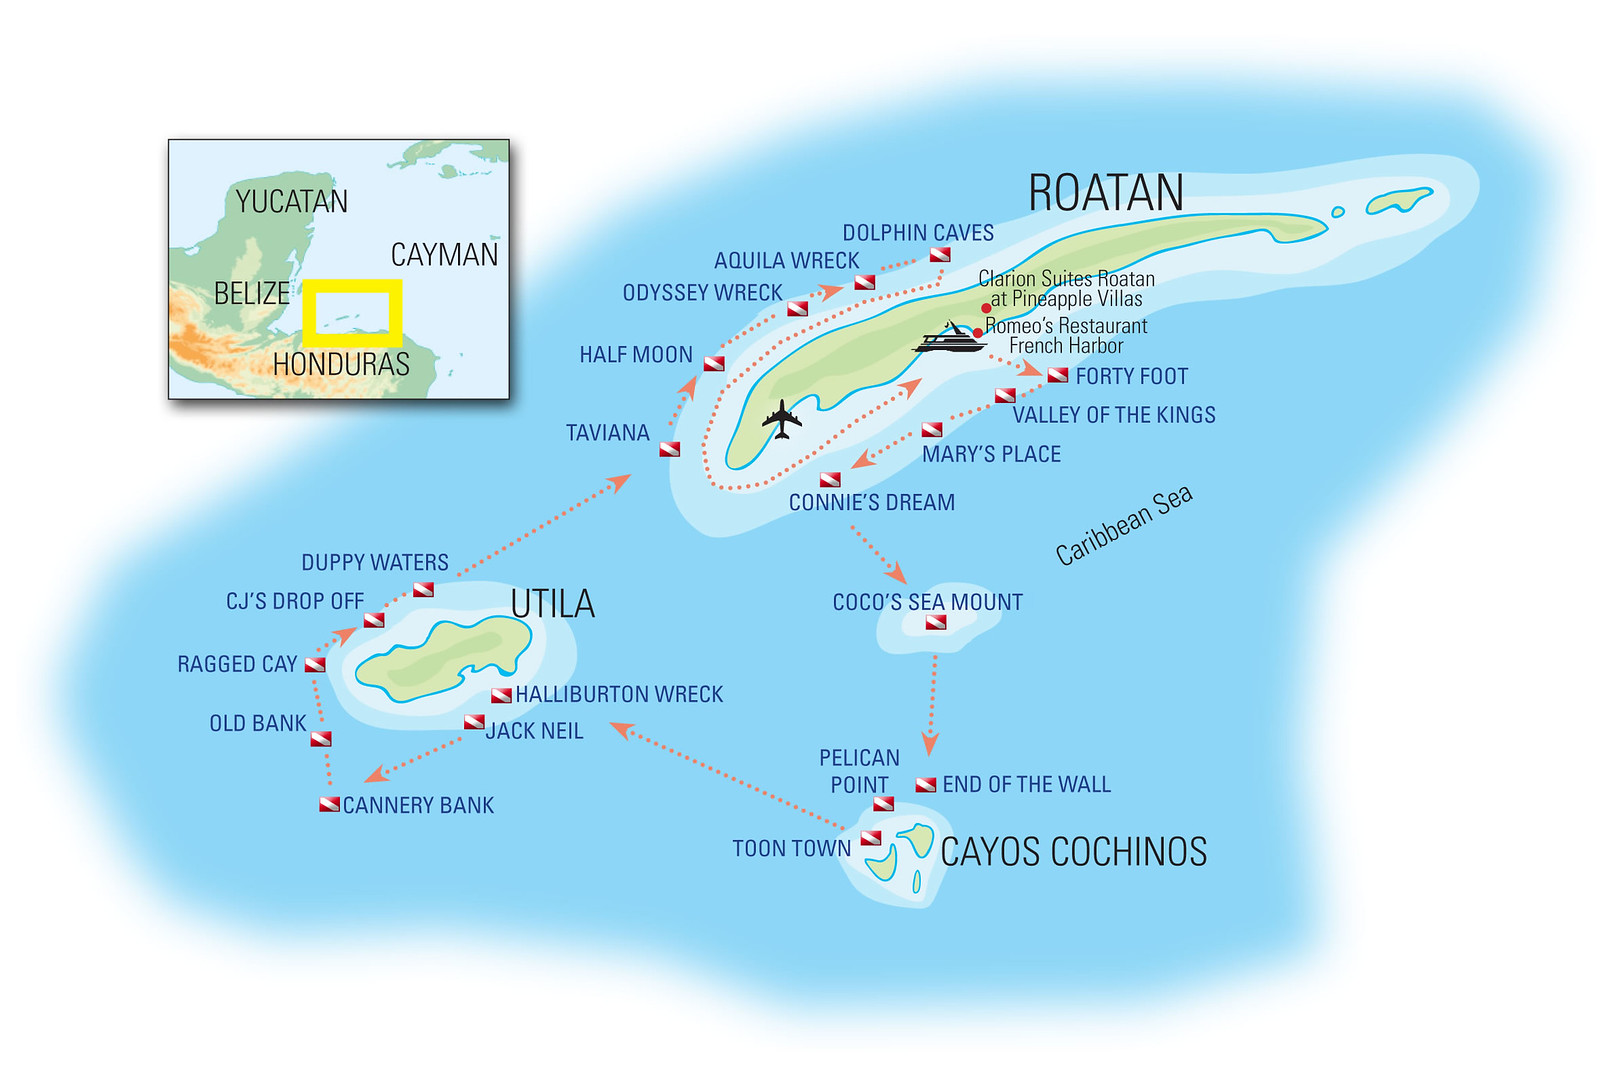 Mahogany Bay Roatan Map